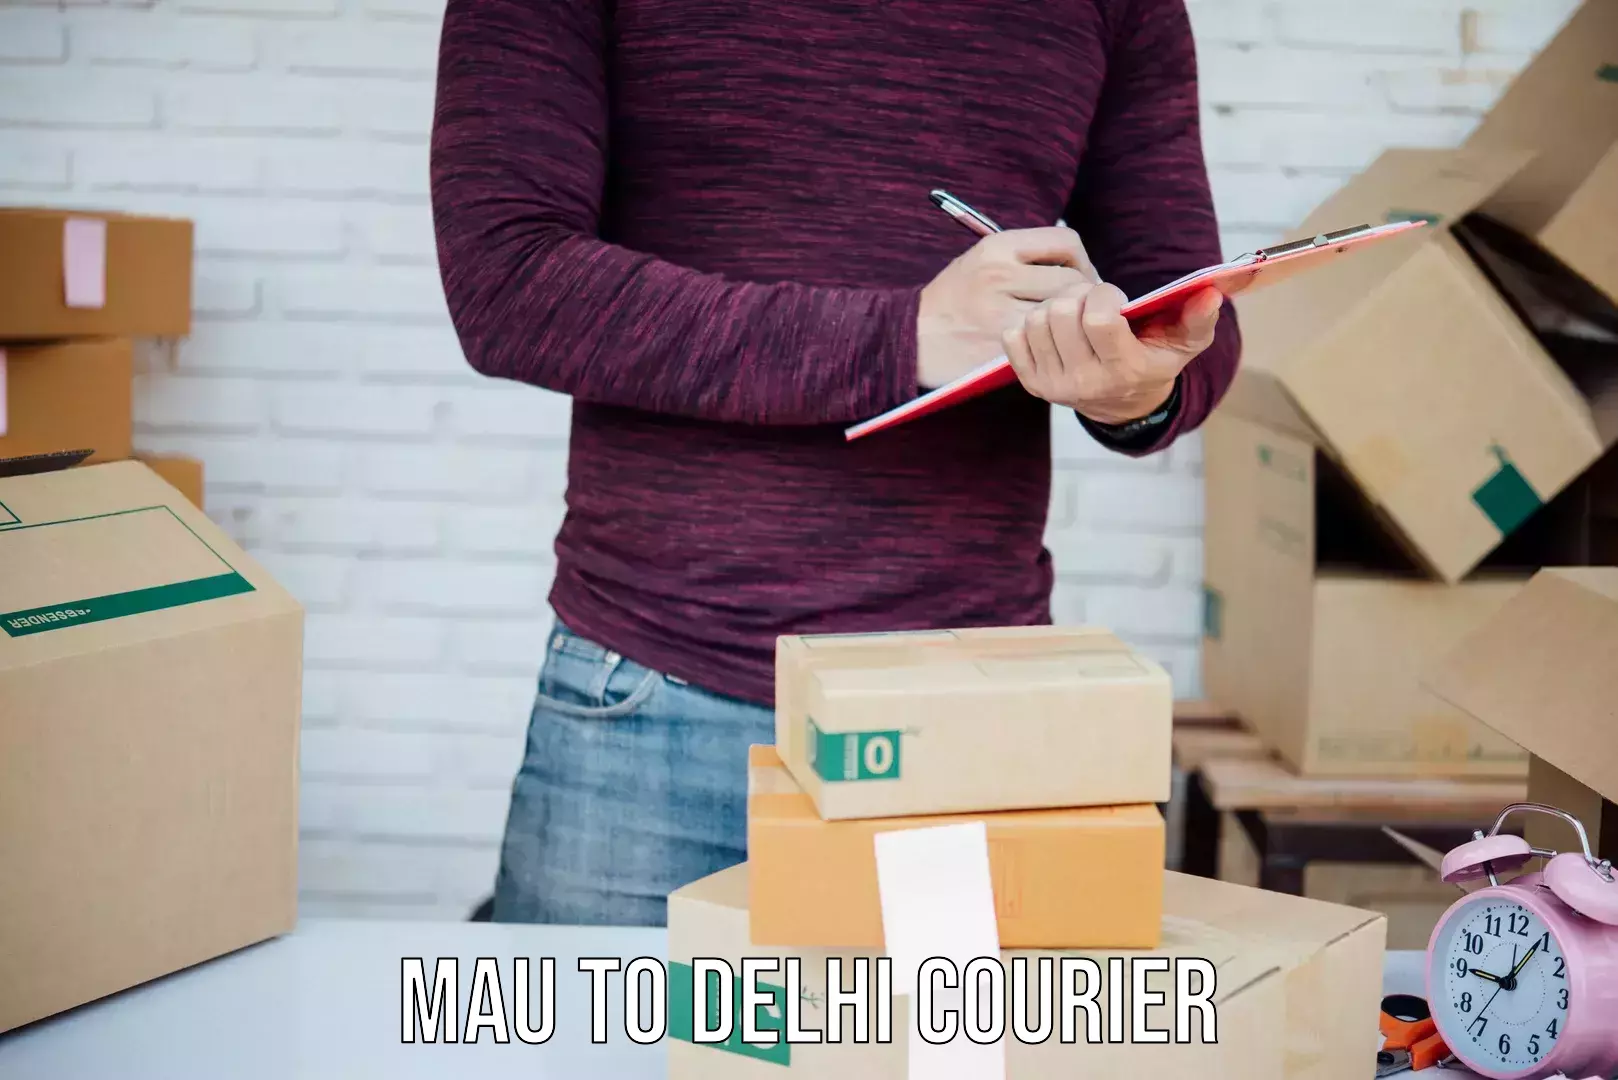 Custom courier strategies in Mau to IIT Delhi